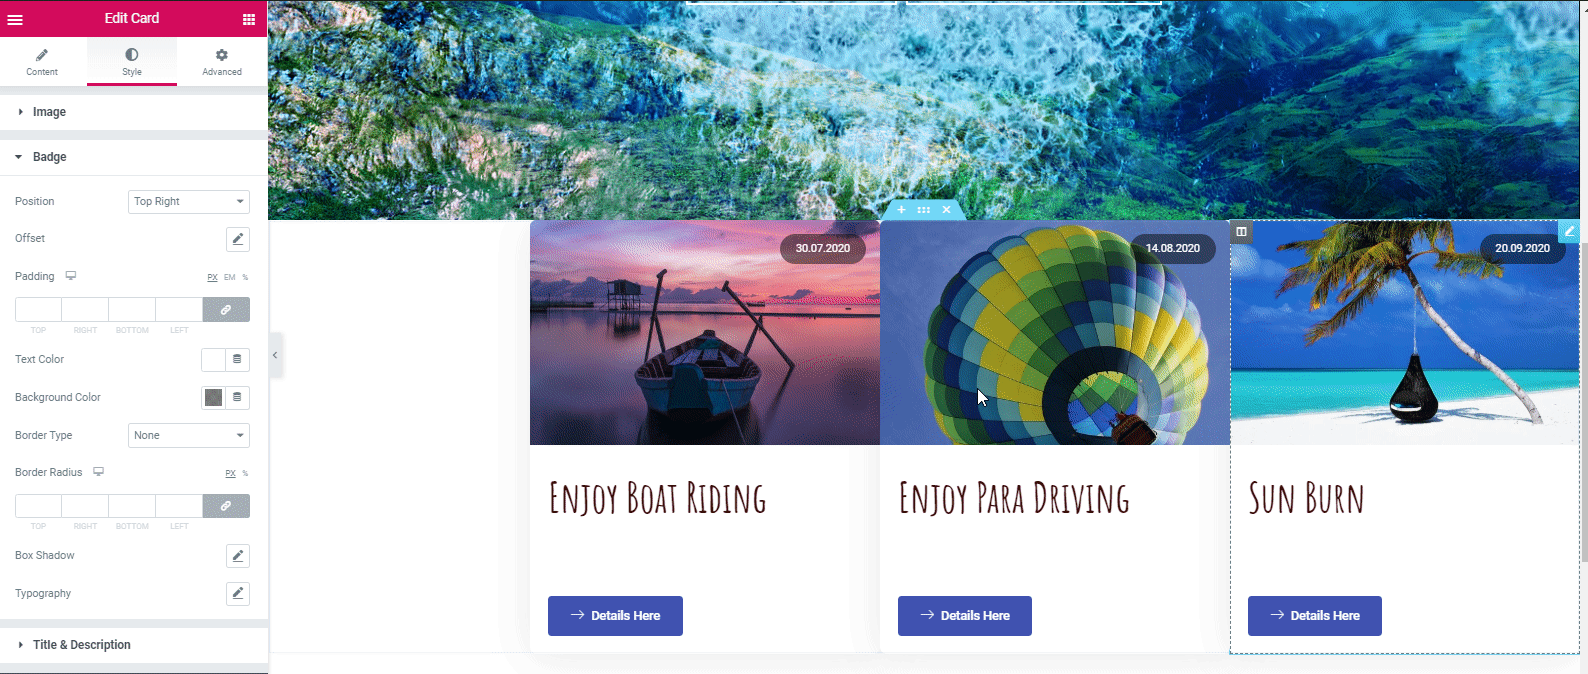 Create an own travel blog website